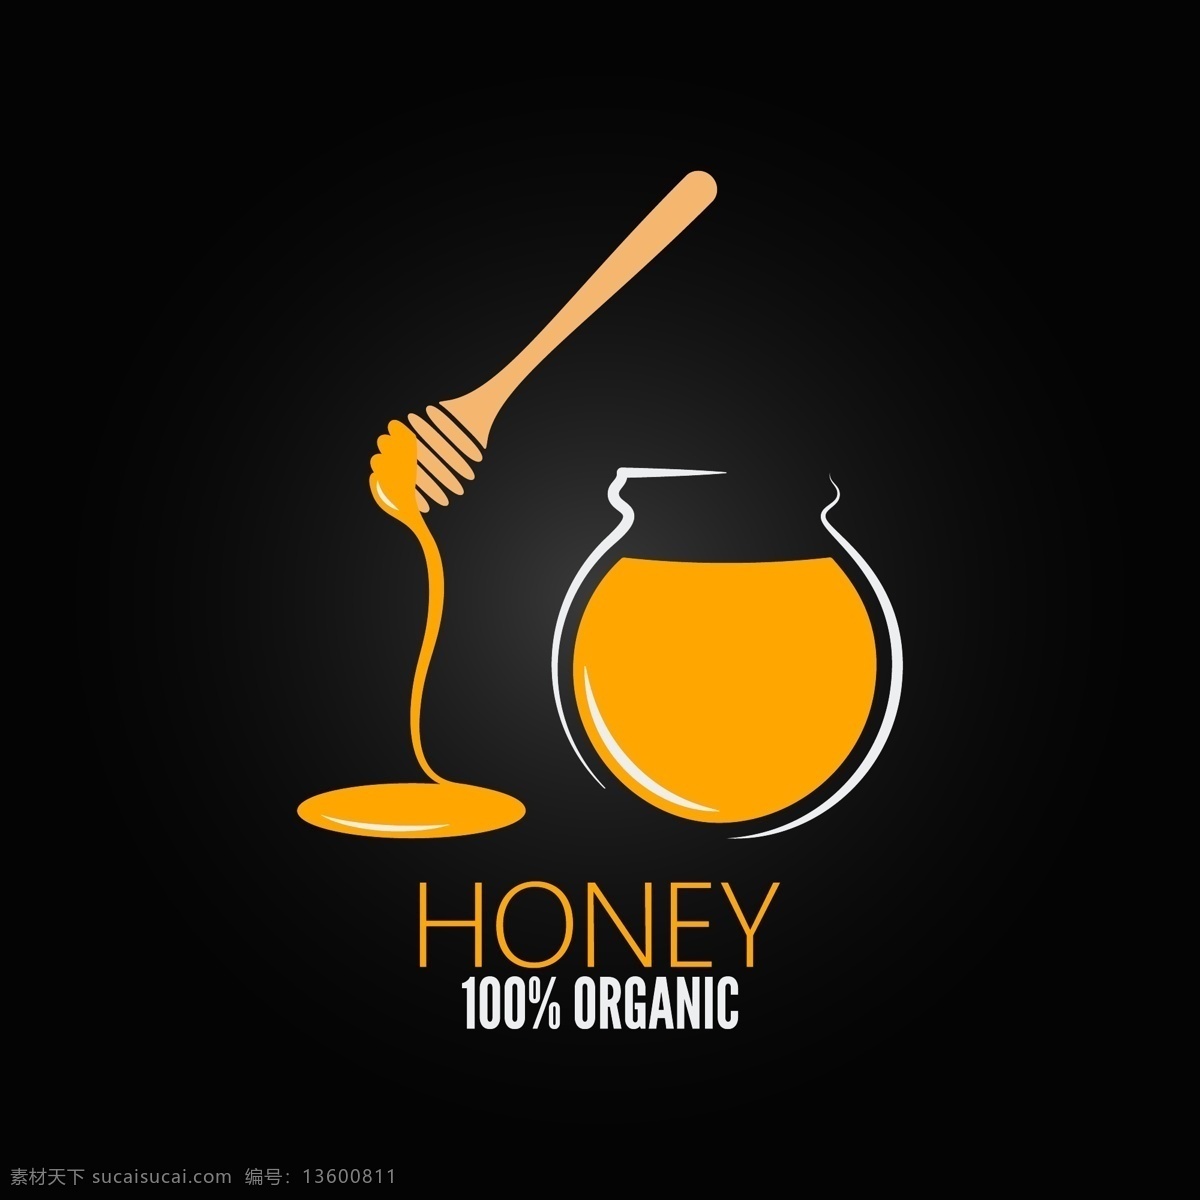 创意 蜂蜜 插画 矢量 蜂蜜锤 黄色 金黄 honey 纯天然 手绘 矢量元素 卡通设计